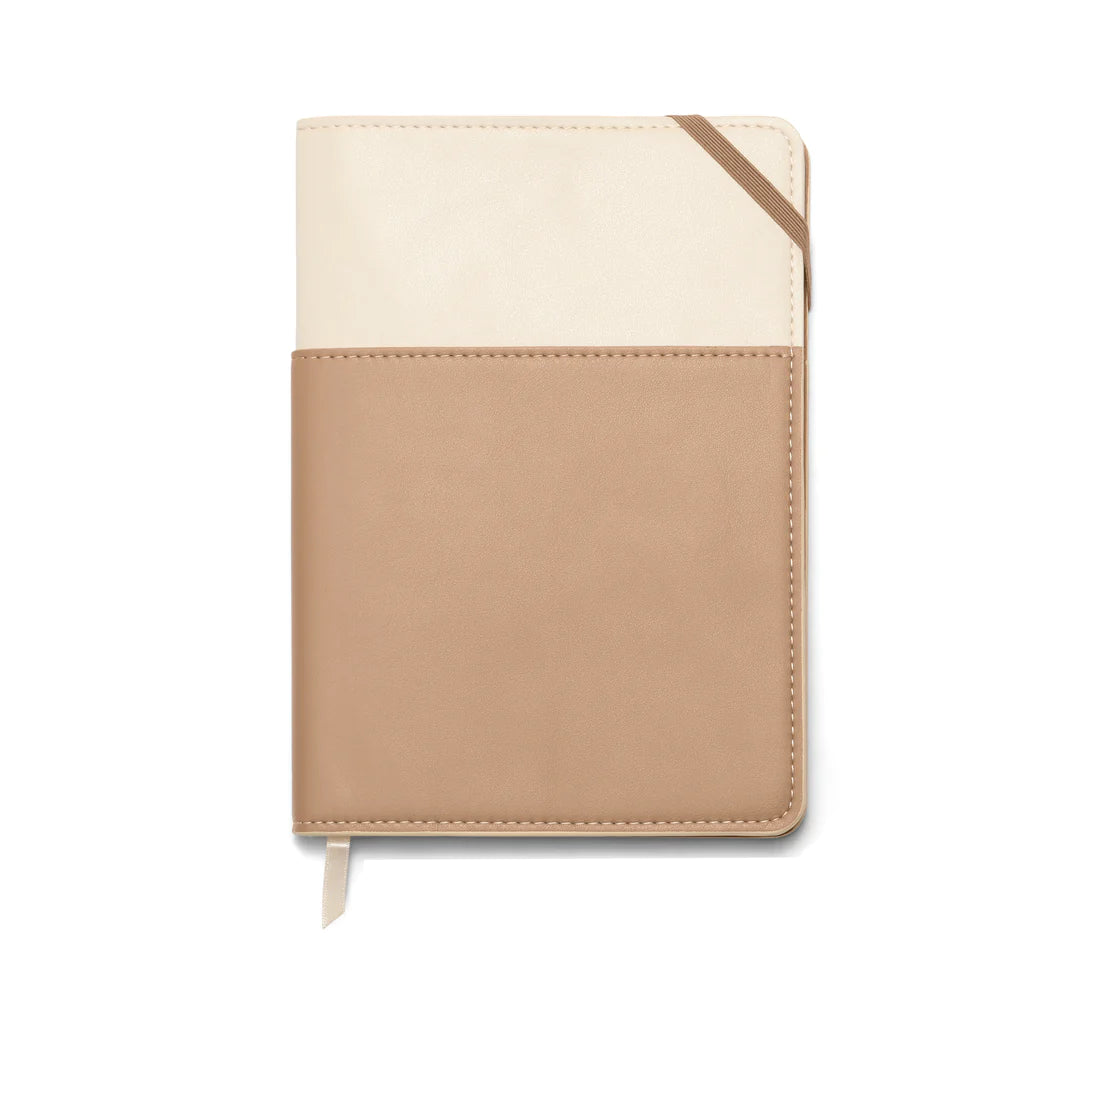 Pocket journal